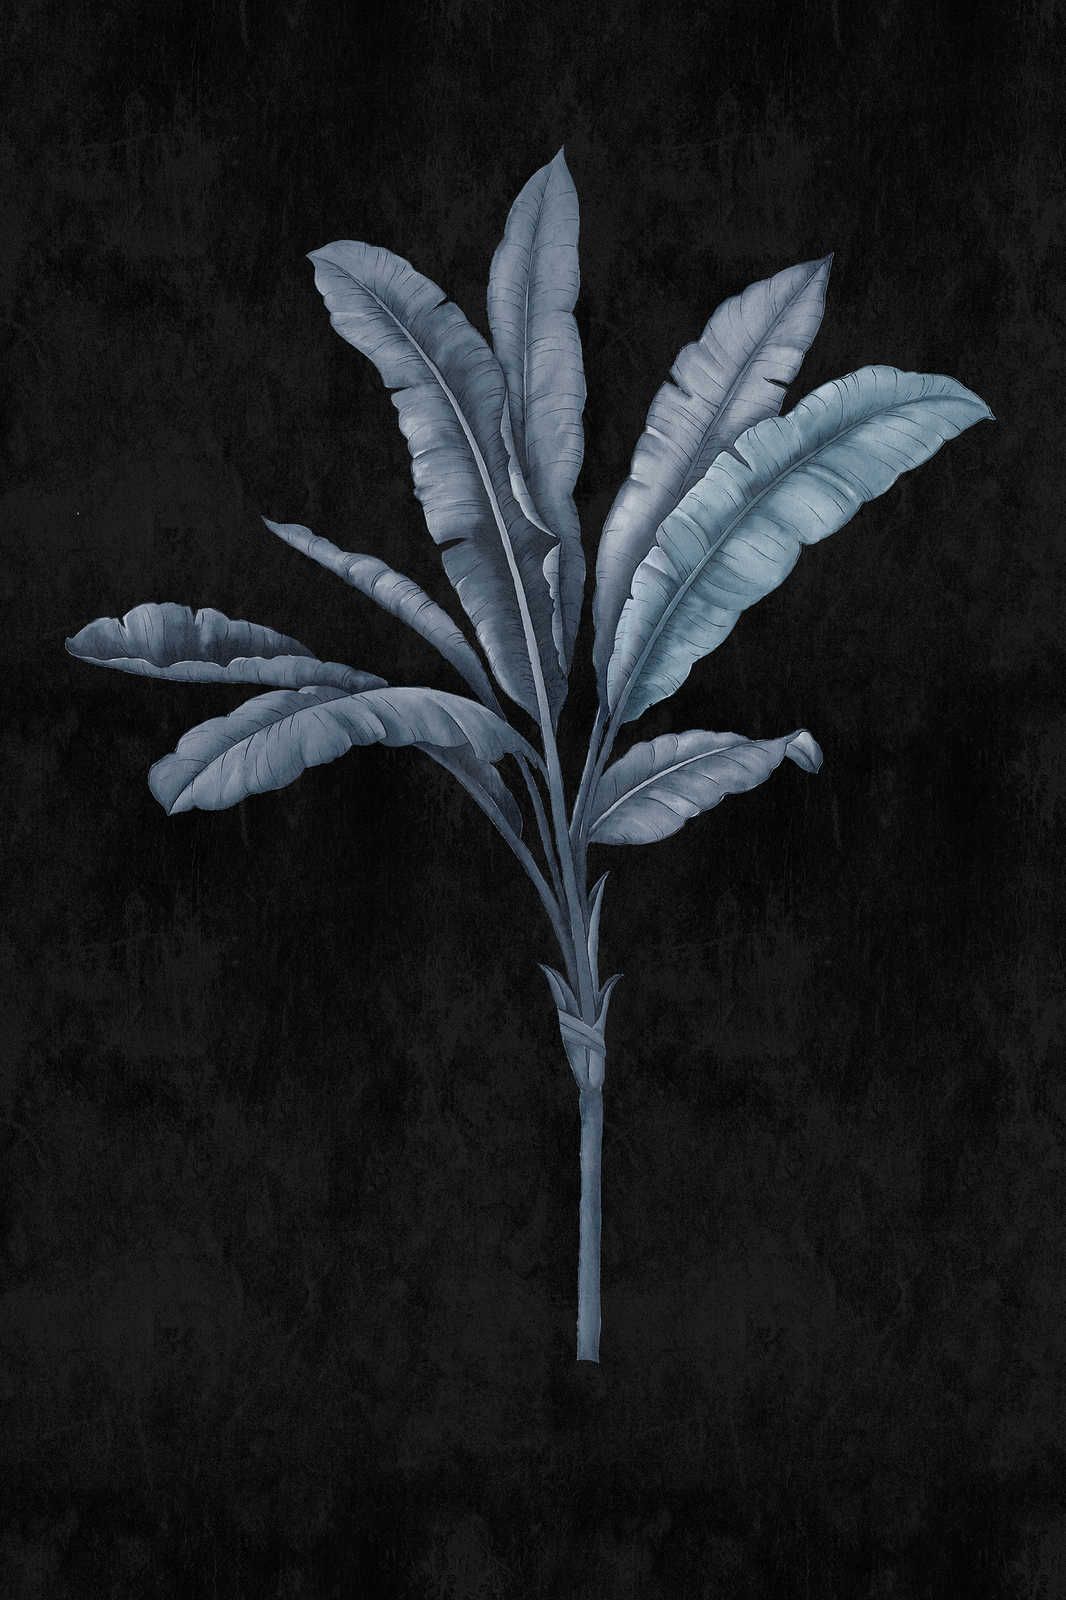             Fiji 2 - Quadro su tela nero con motivo di palme blu e grigio - 0,60 m x 0,90 m
        